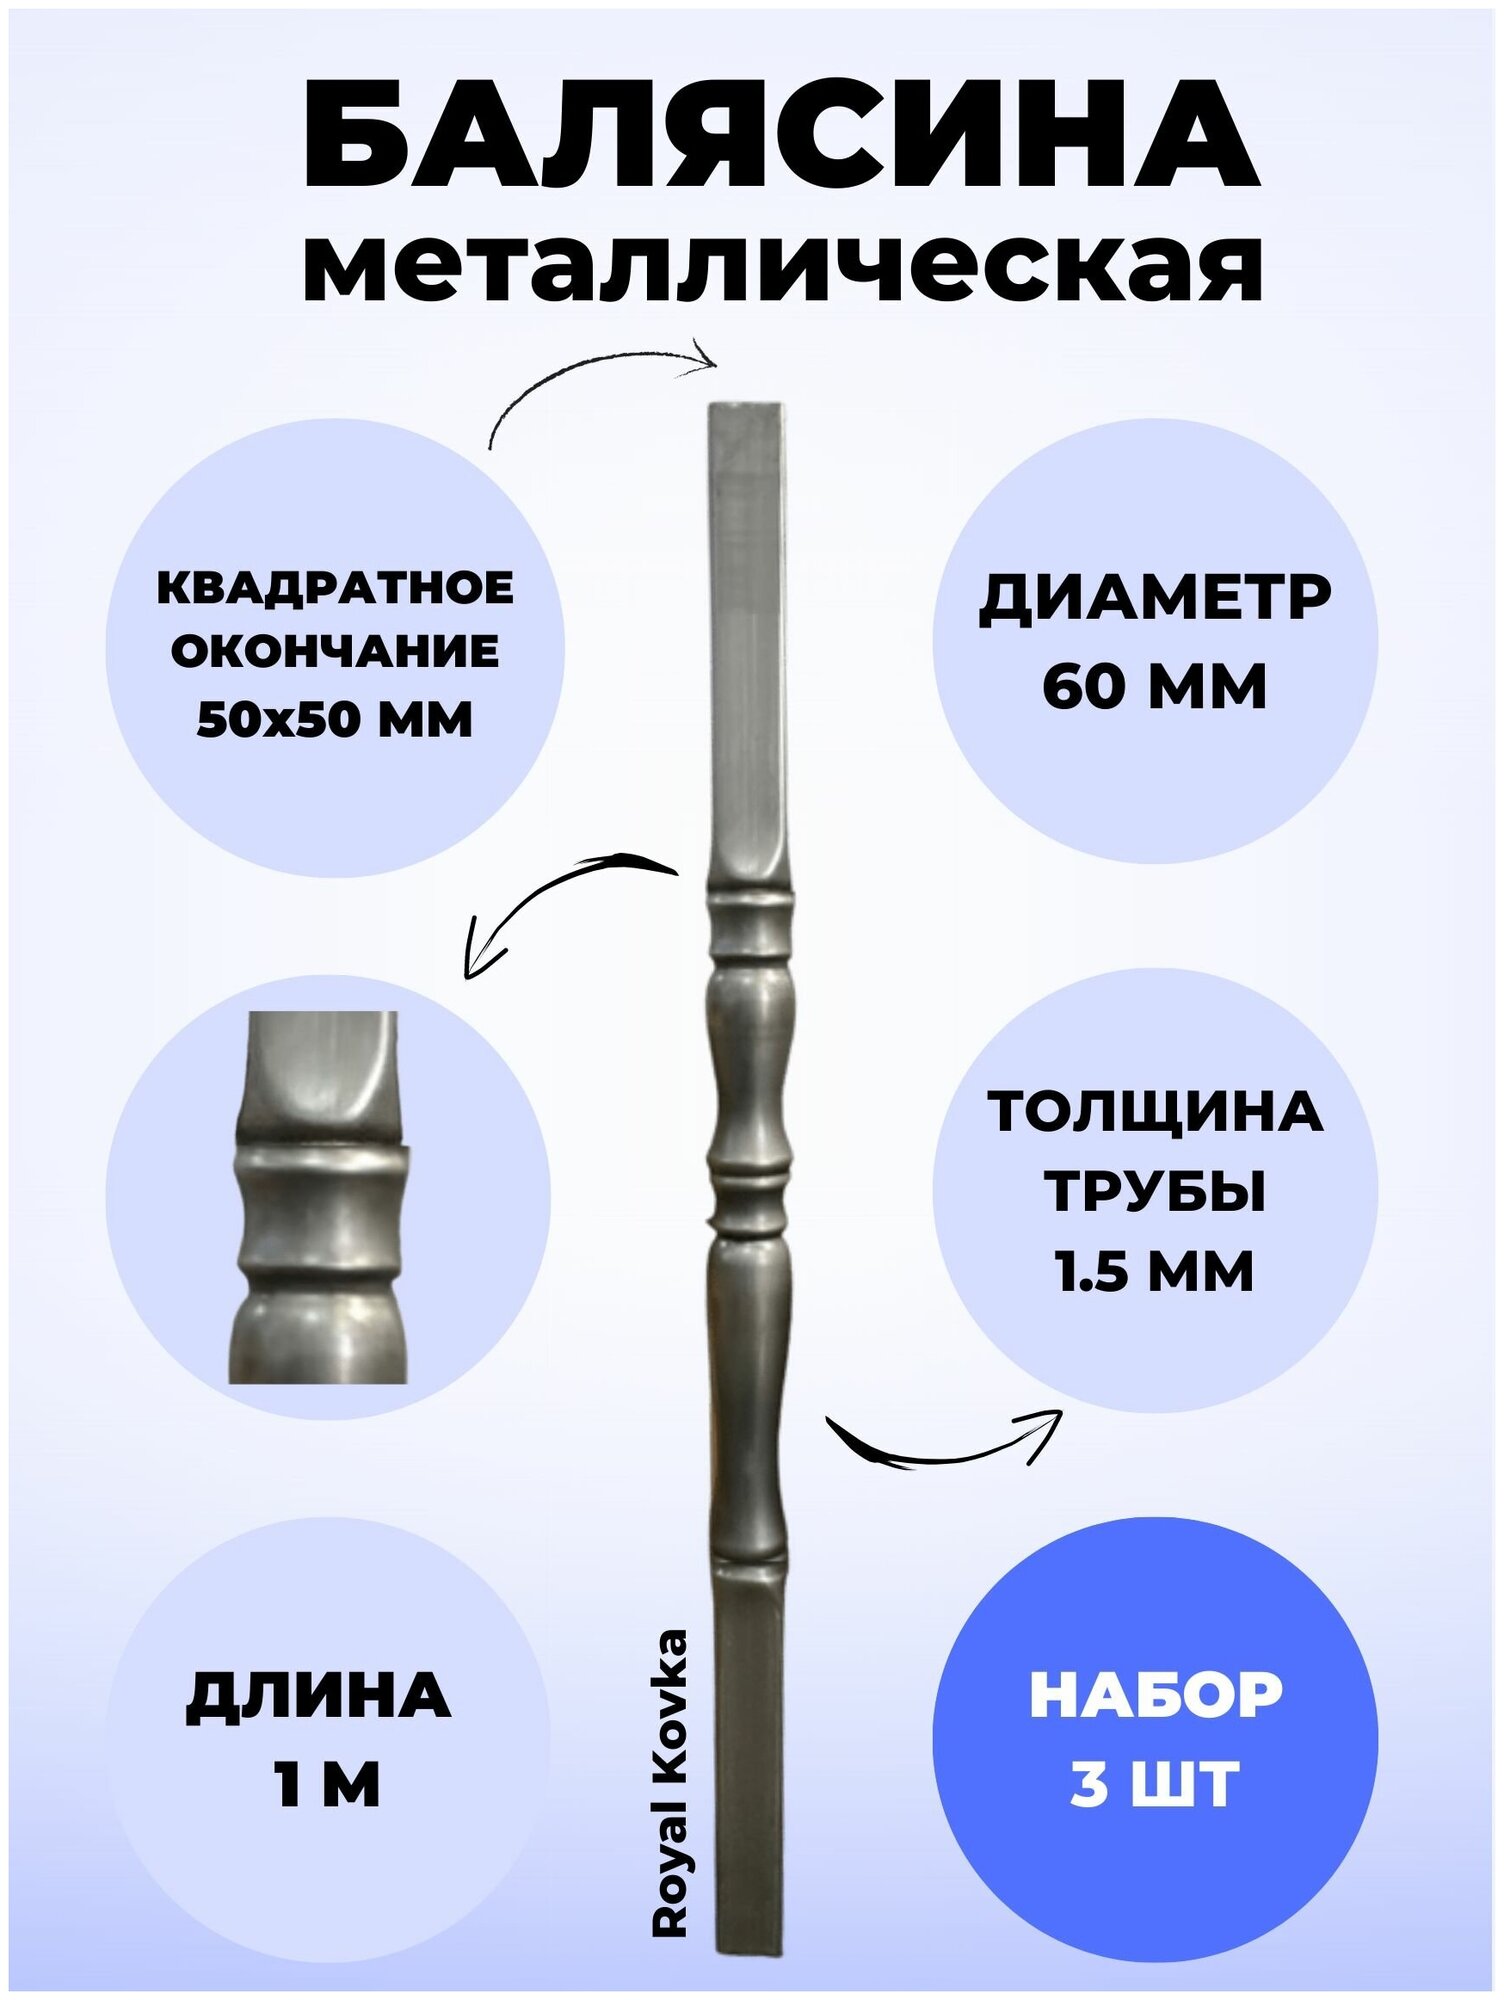 Набор балясин кованых металлических Royal Kovka, 3 шт, диаметр 60 мм, квадратные окончания 50х50 мм, арт. 50*50.3 КВ 3